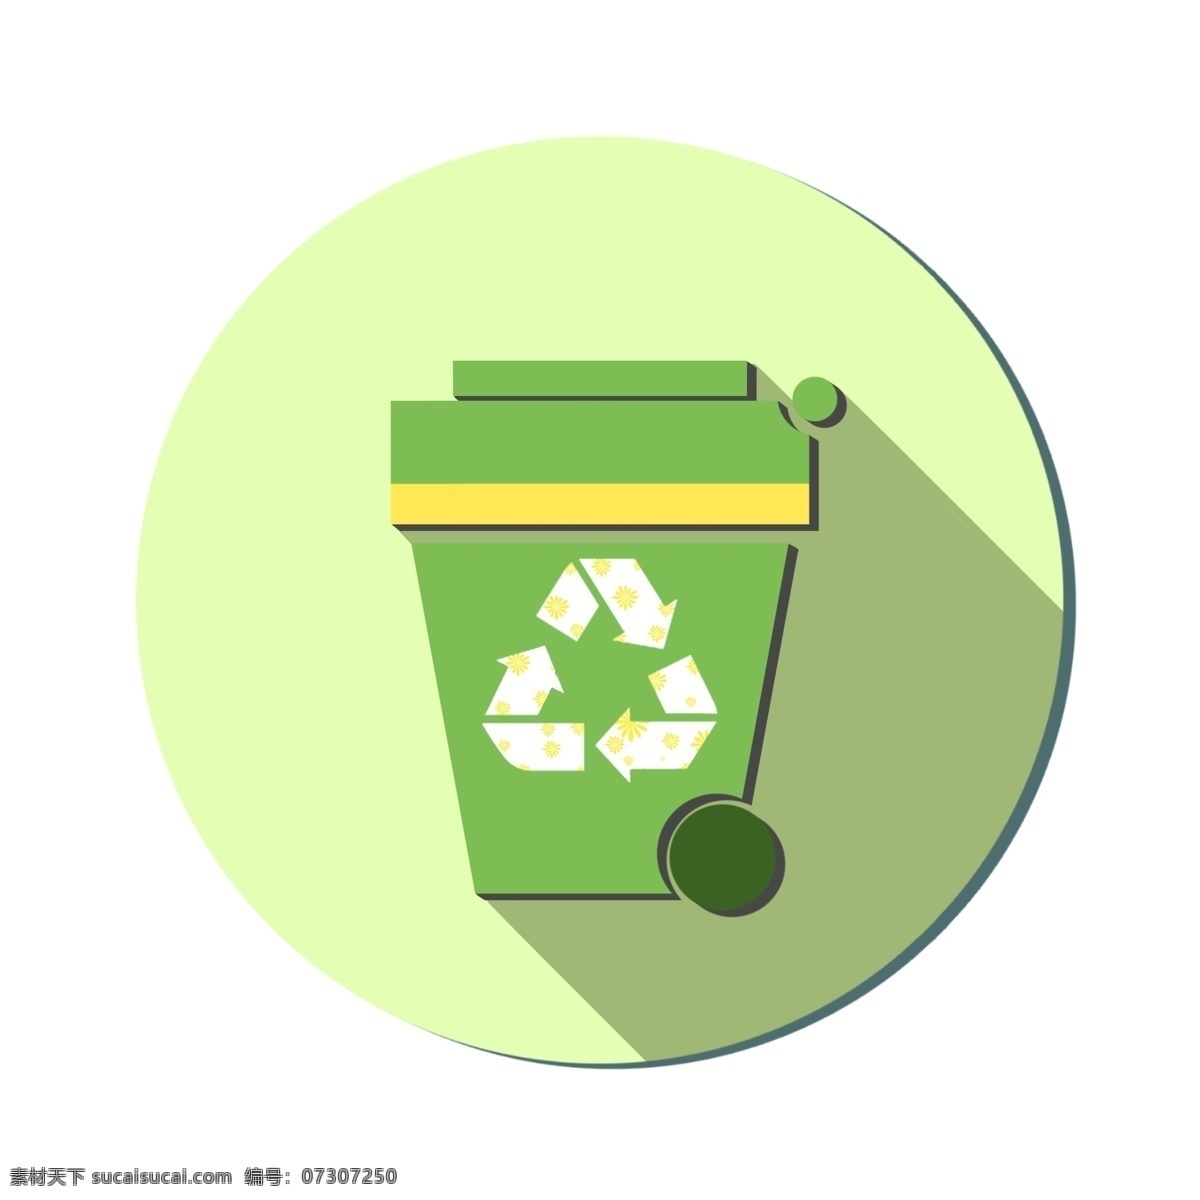 回收 环保 垃圾桶 绿色 军绿色 可回收 低碳环保 简约的 简约风格 可爱的 卡通的